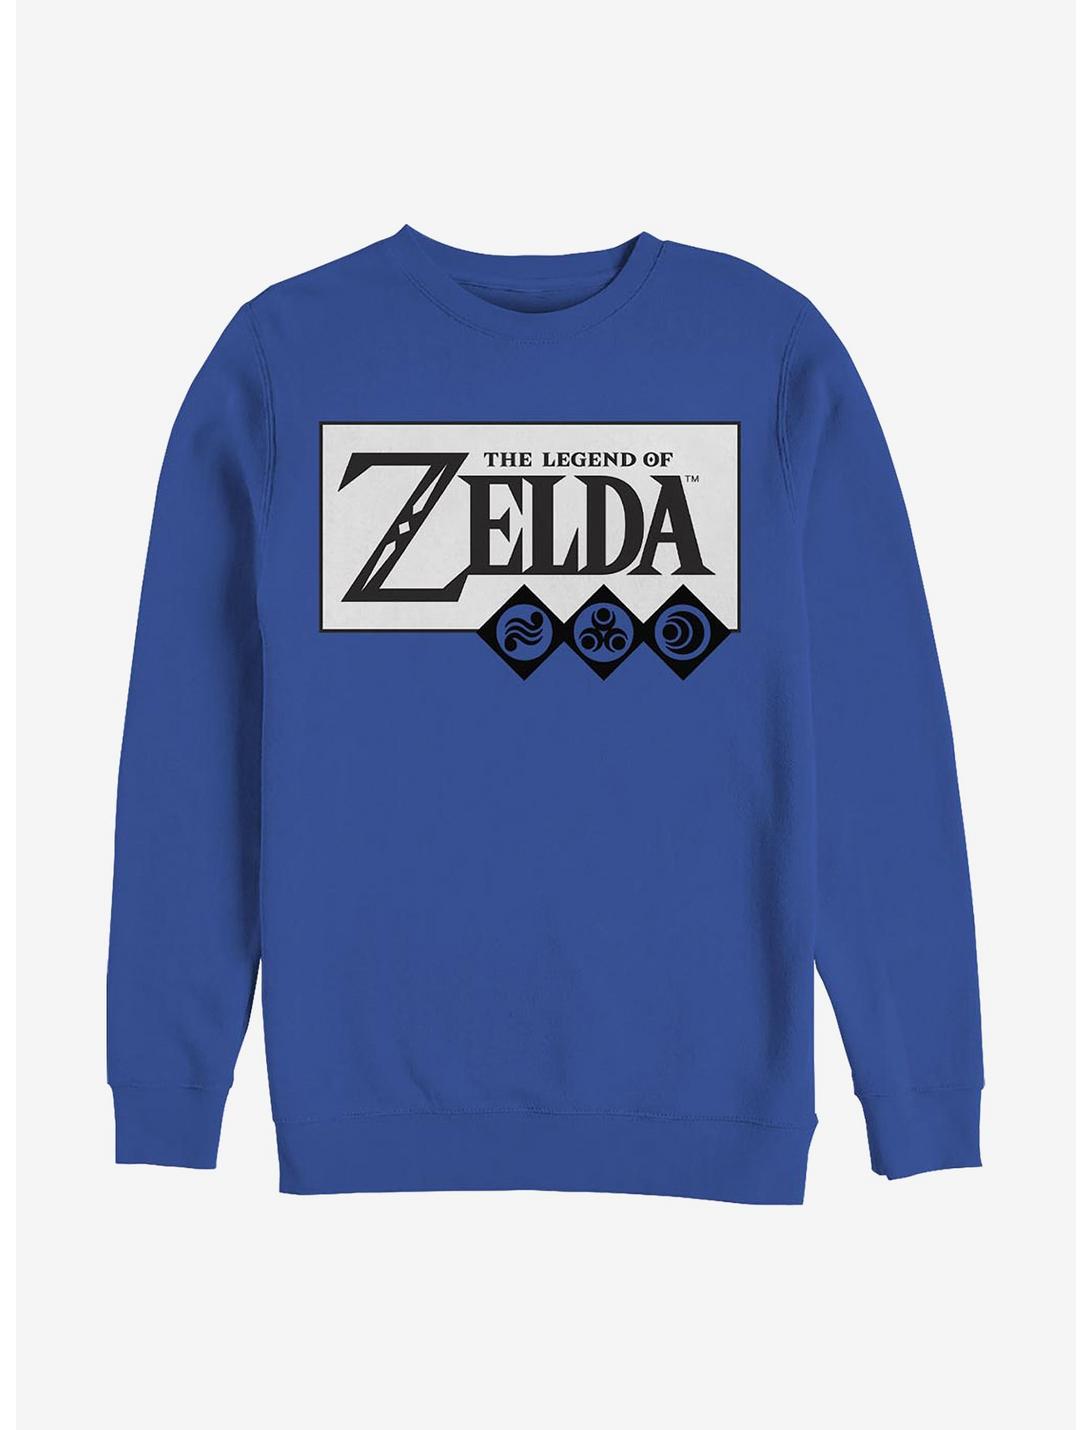 Nintendo Zelda Nineties Link Crew Sweatshirt, ROYAL, hi-res